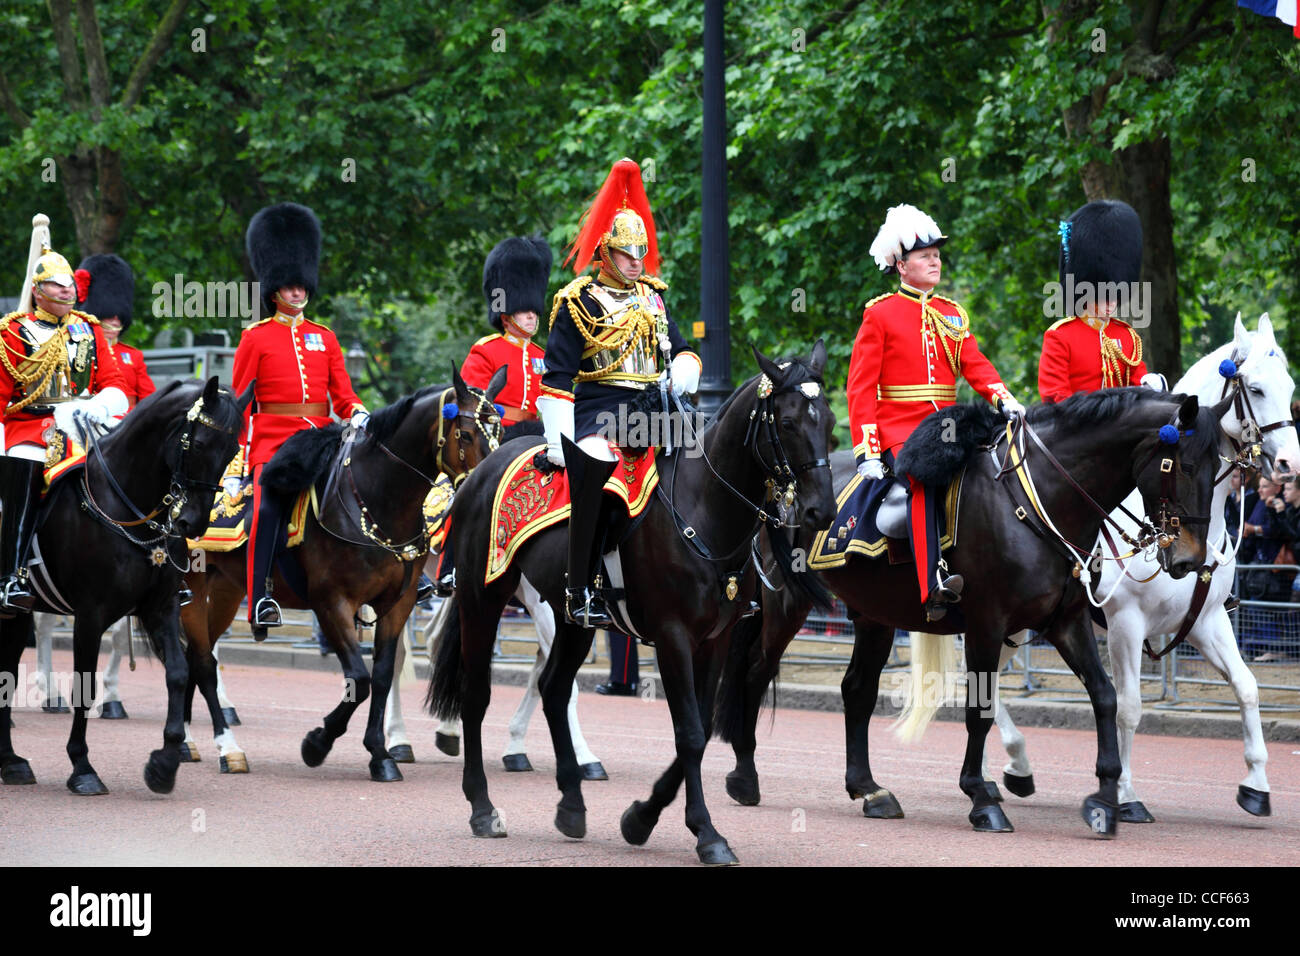 La vie des régiments de cavalerie de famille garde passer le long de Pall Mall durant la parade la couleur, Londres, Angleterre 2011 Banque D'Images